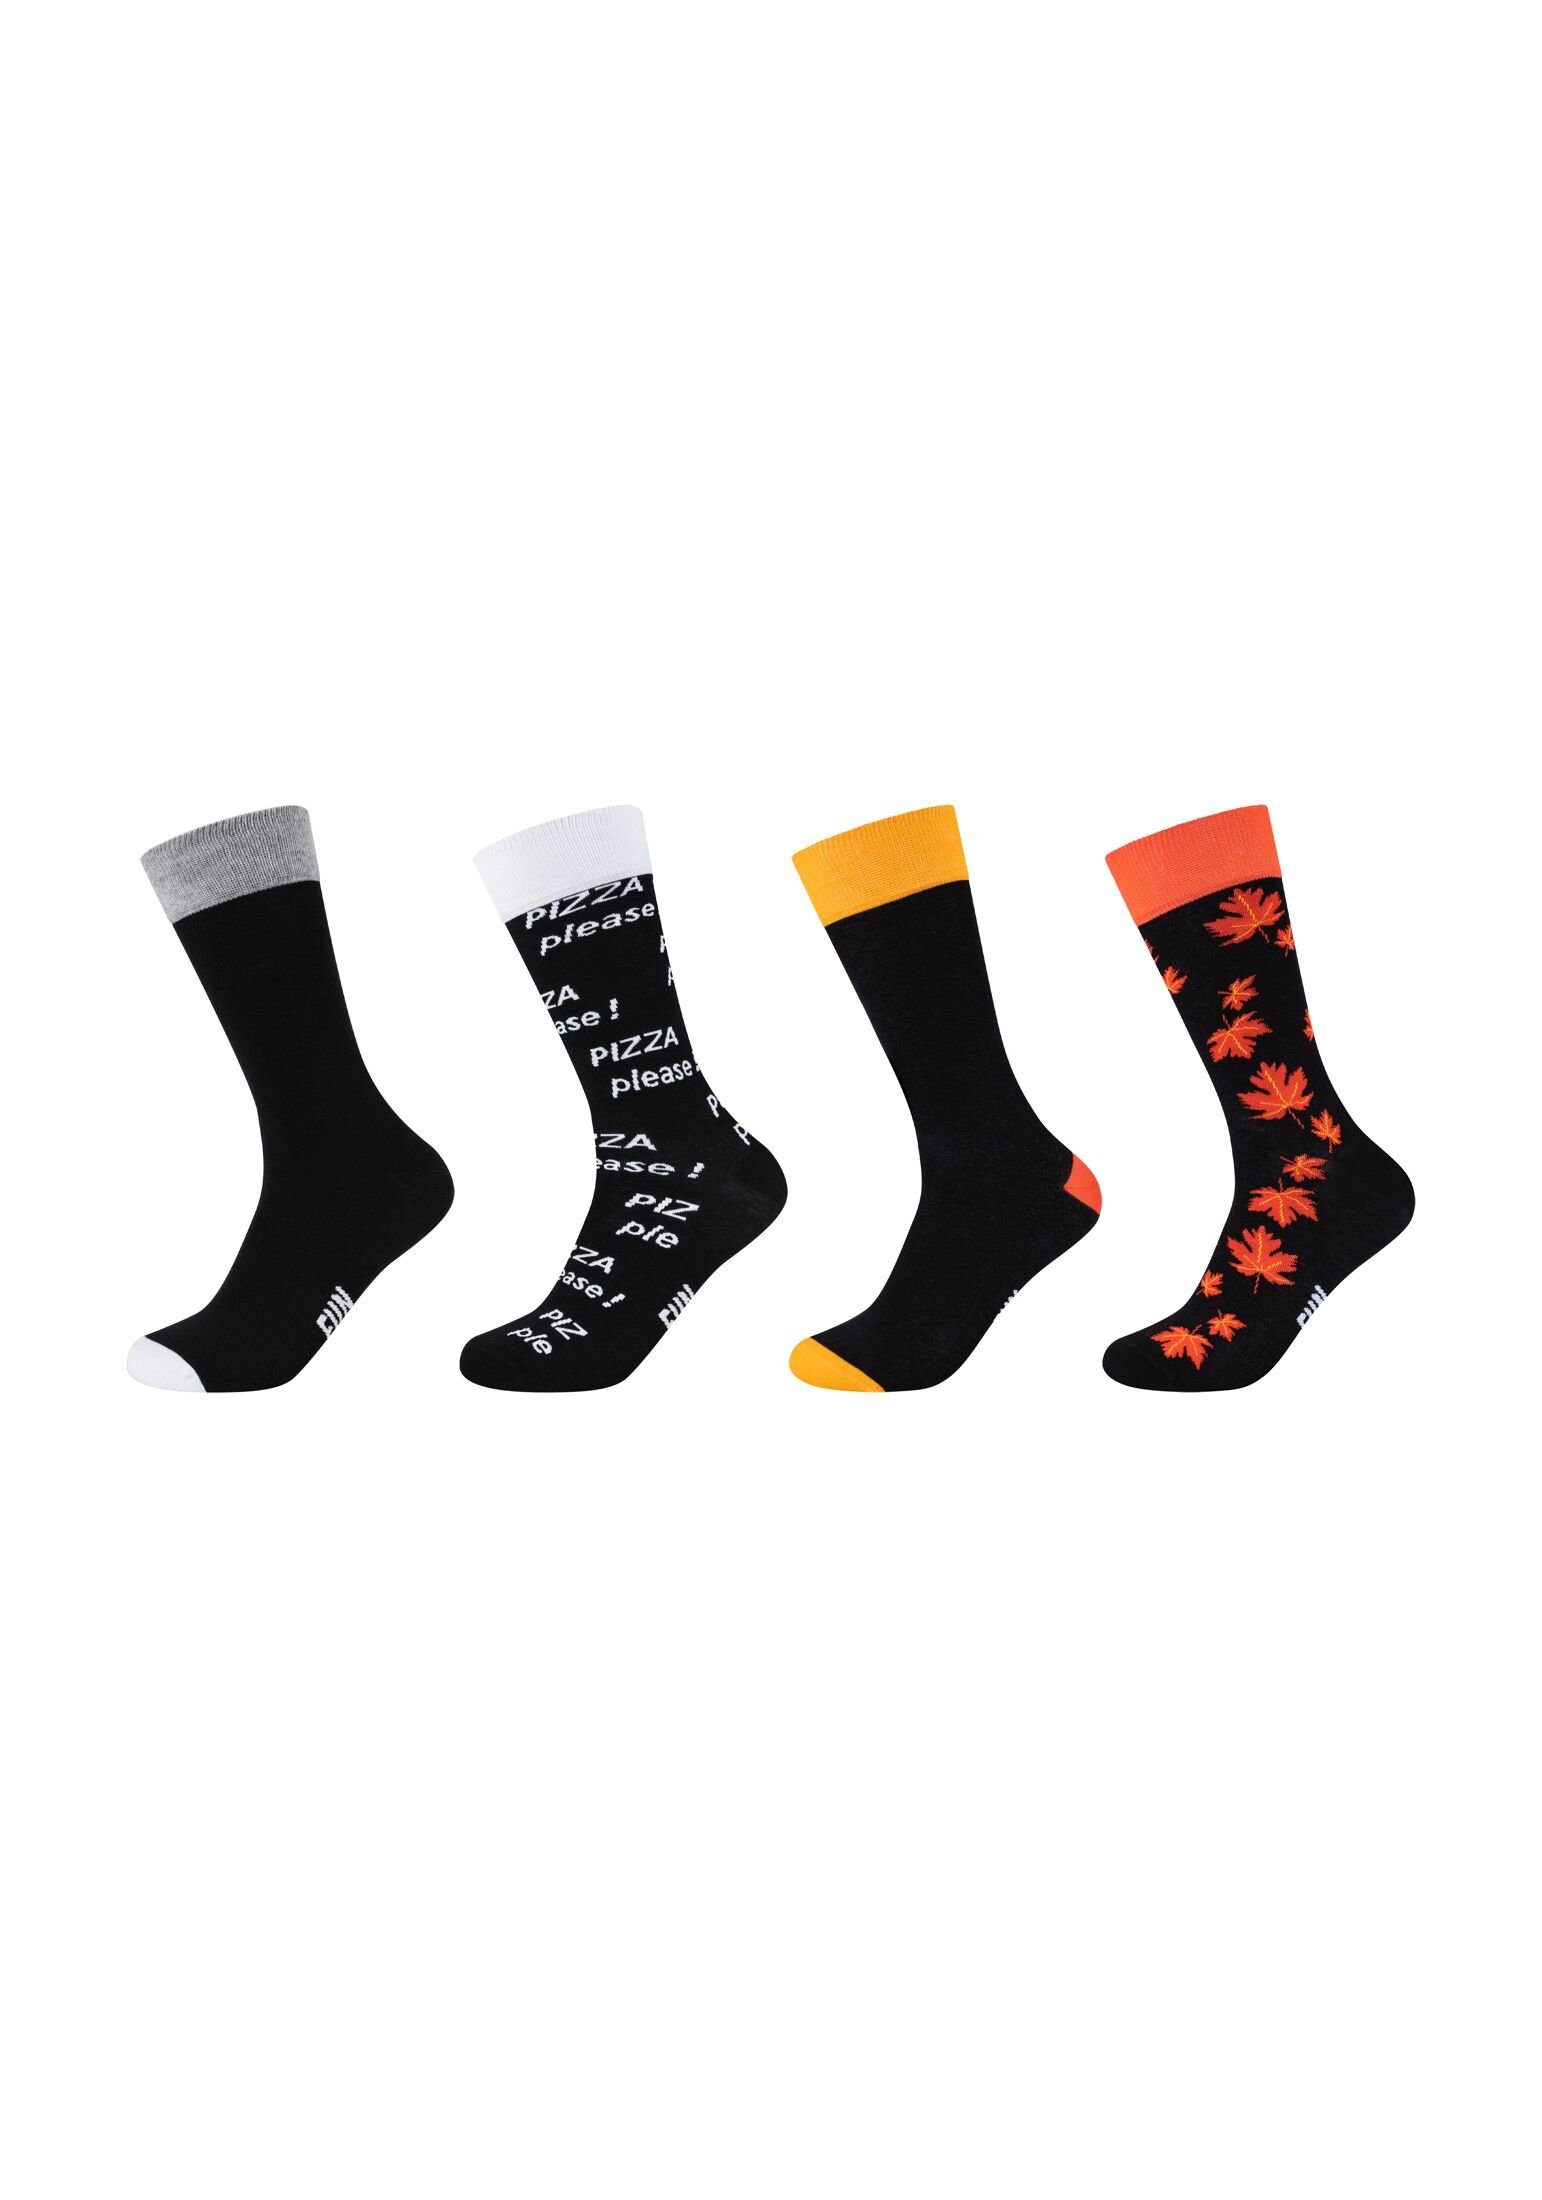 Fun Socks Socken Socken 4er Pack black | Socken